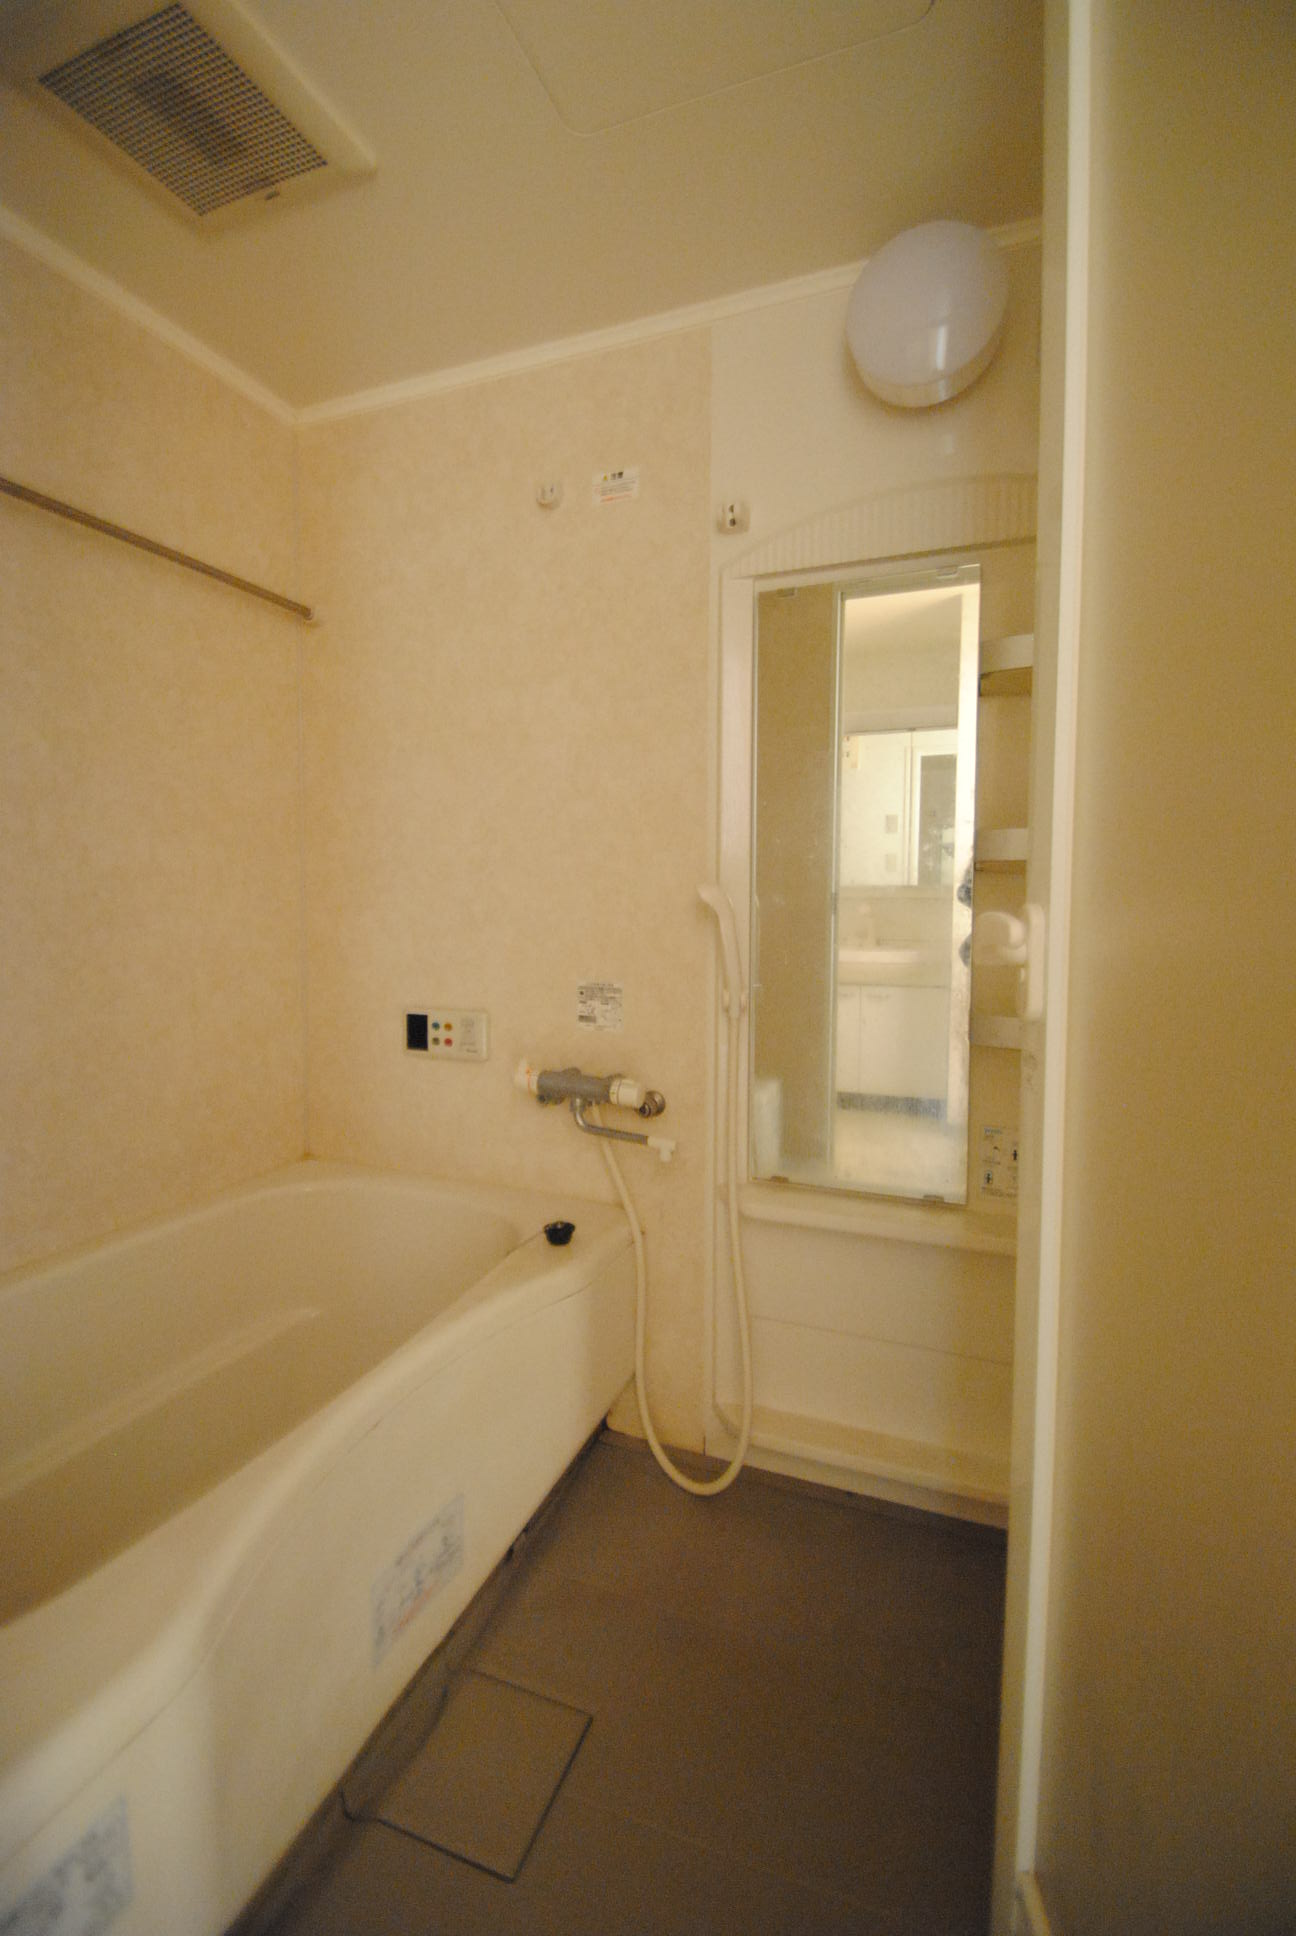 Bath. A bathroom with a mirror